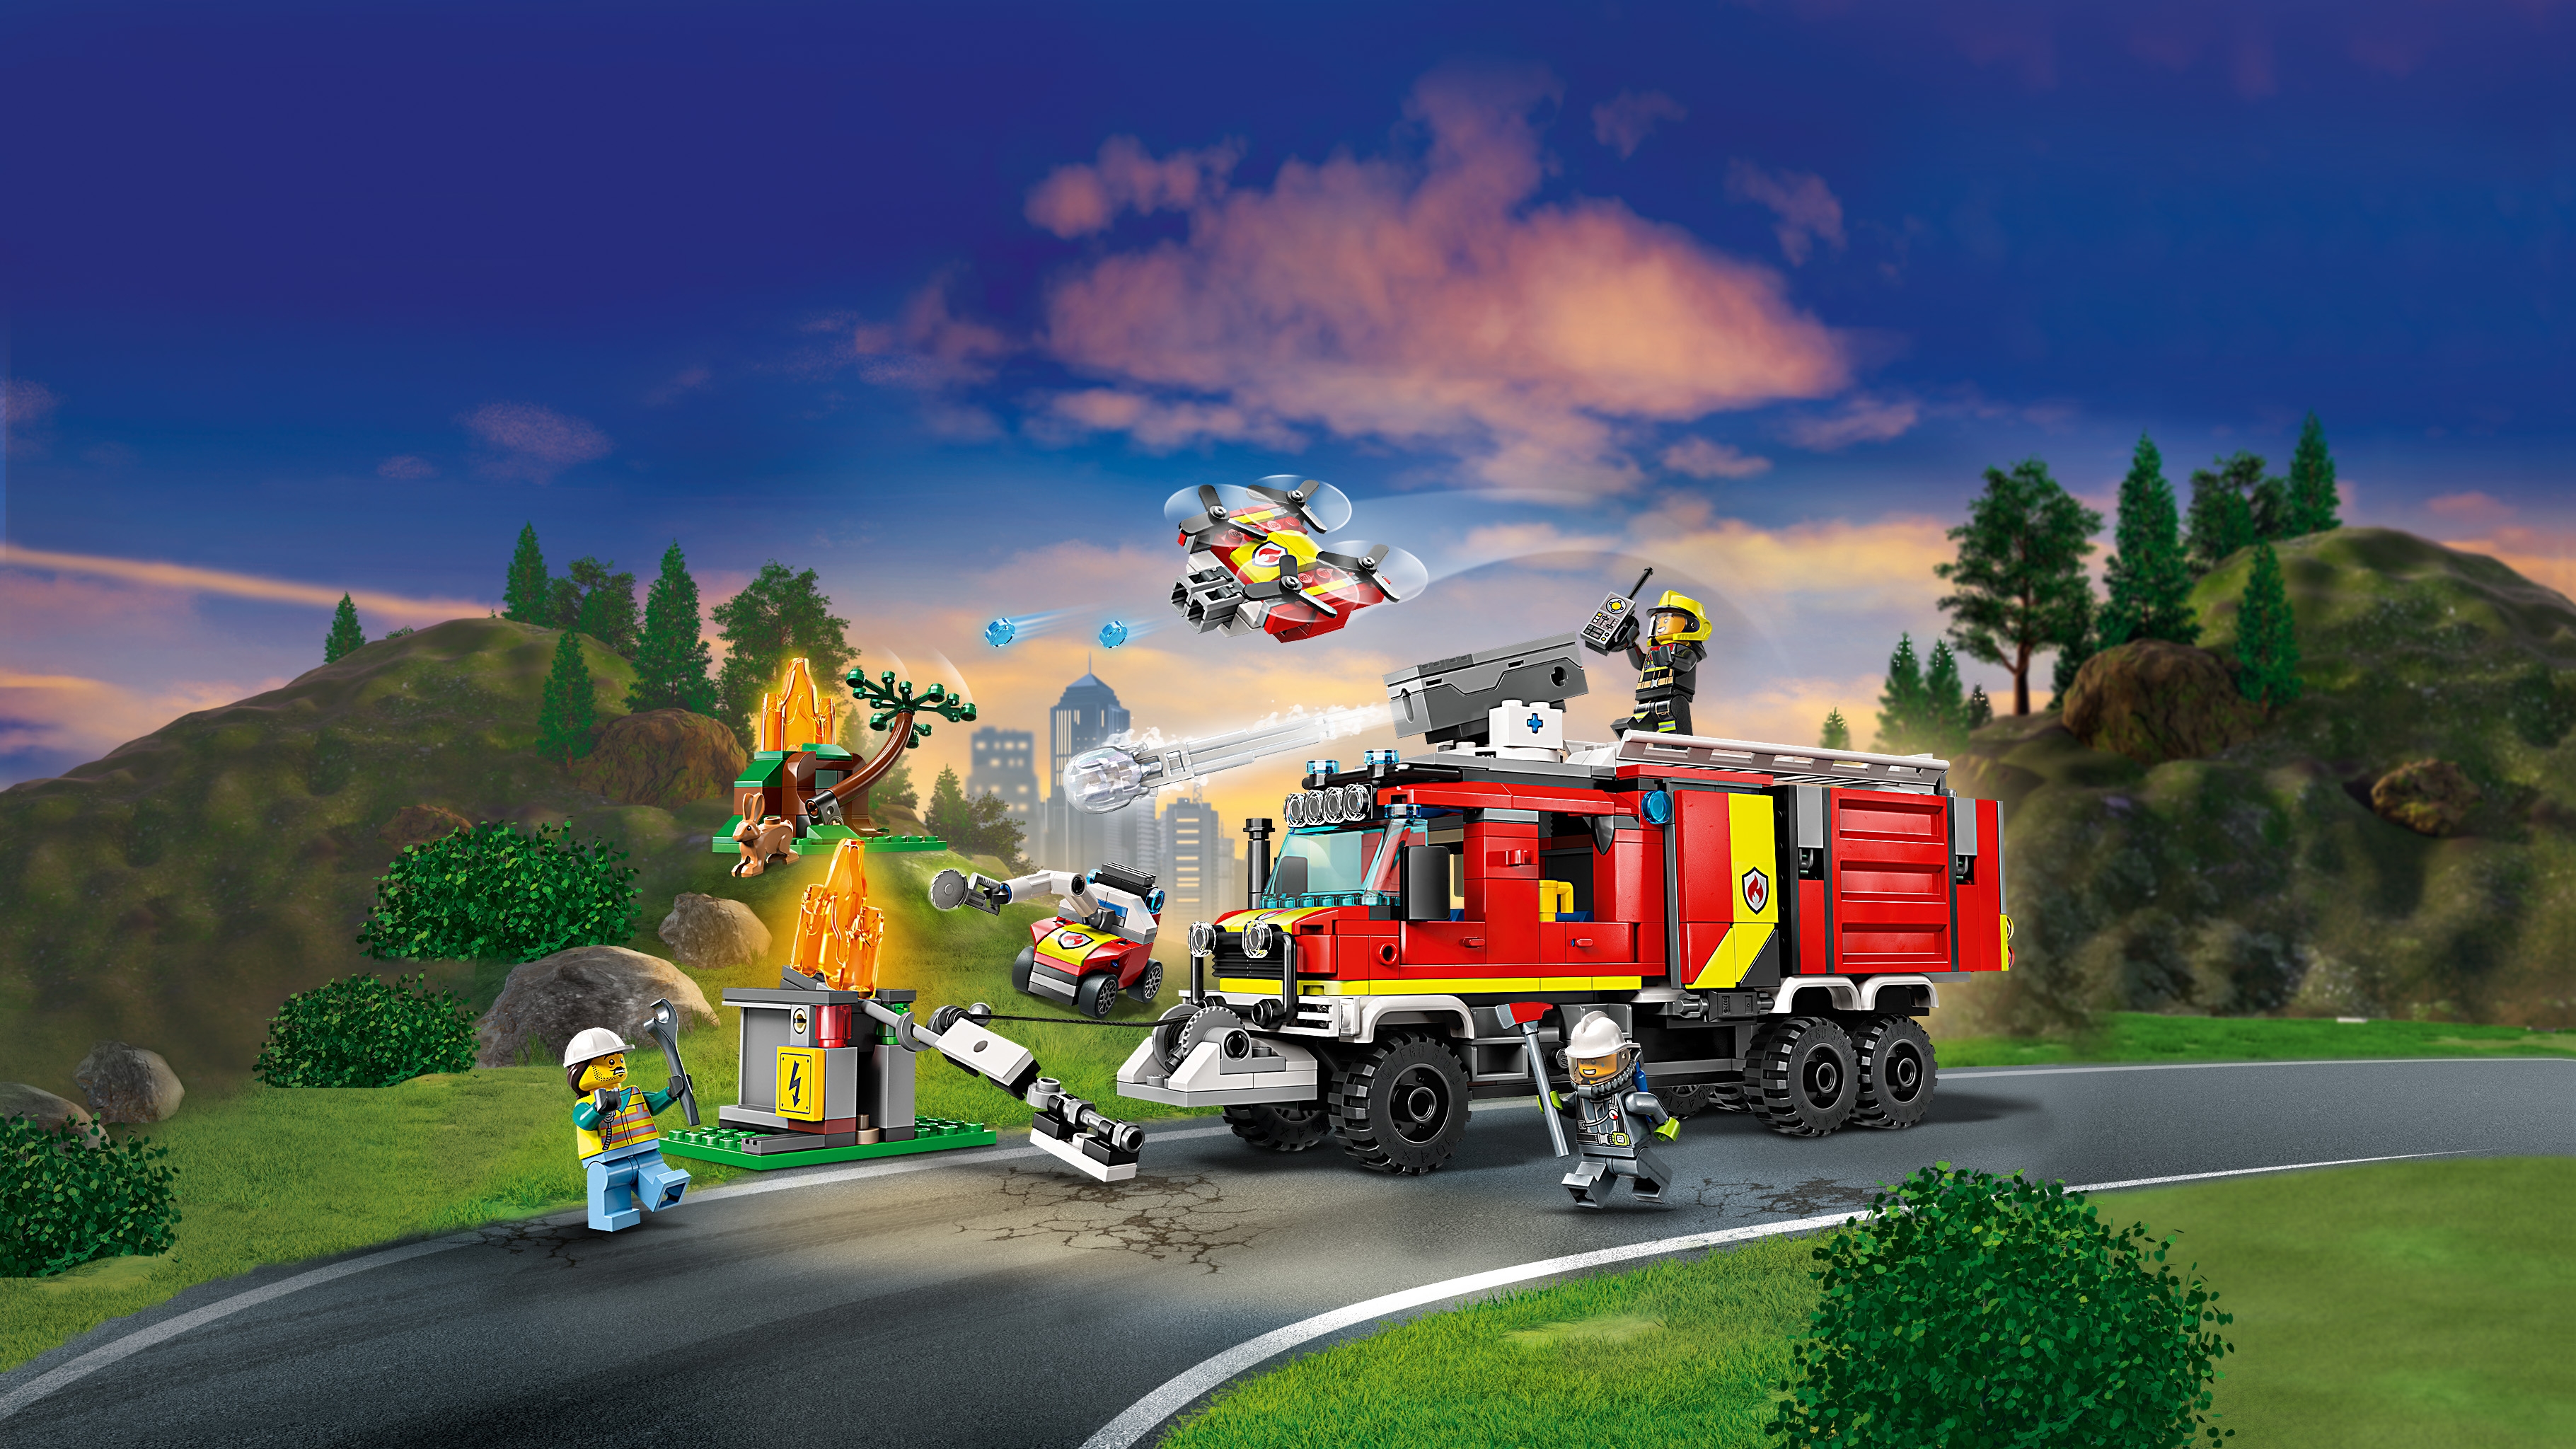 Le camion d'intervention des pompiers - Vidéos - LEGO.com pour les enfants